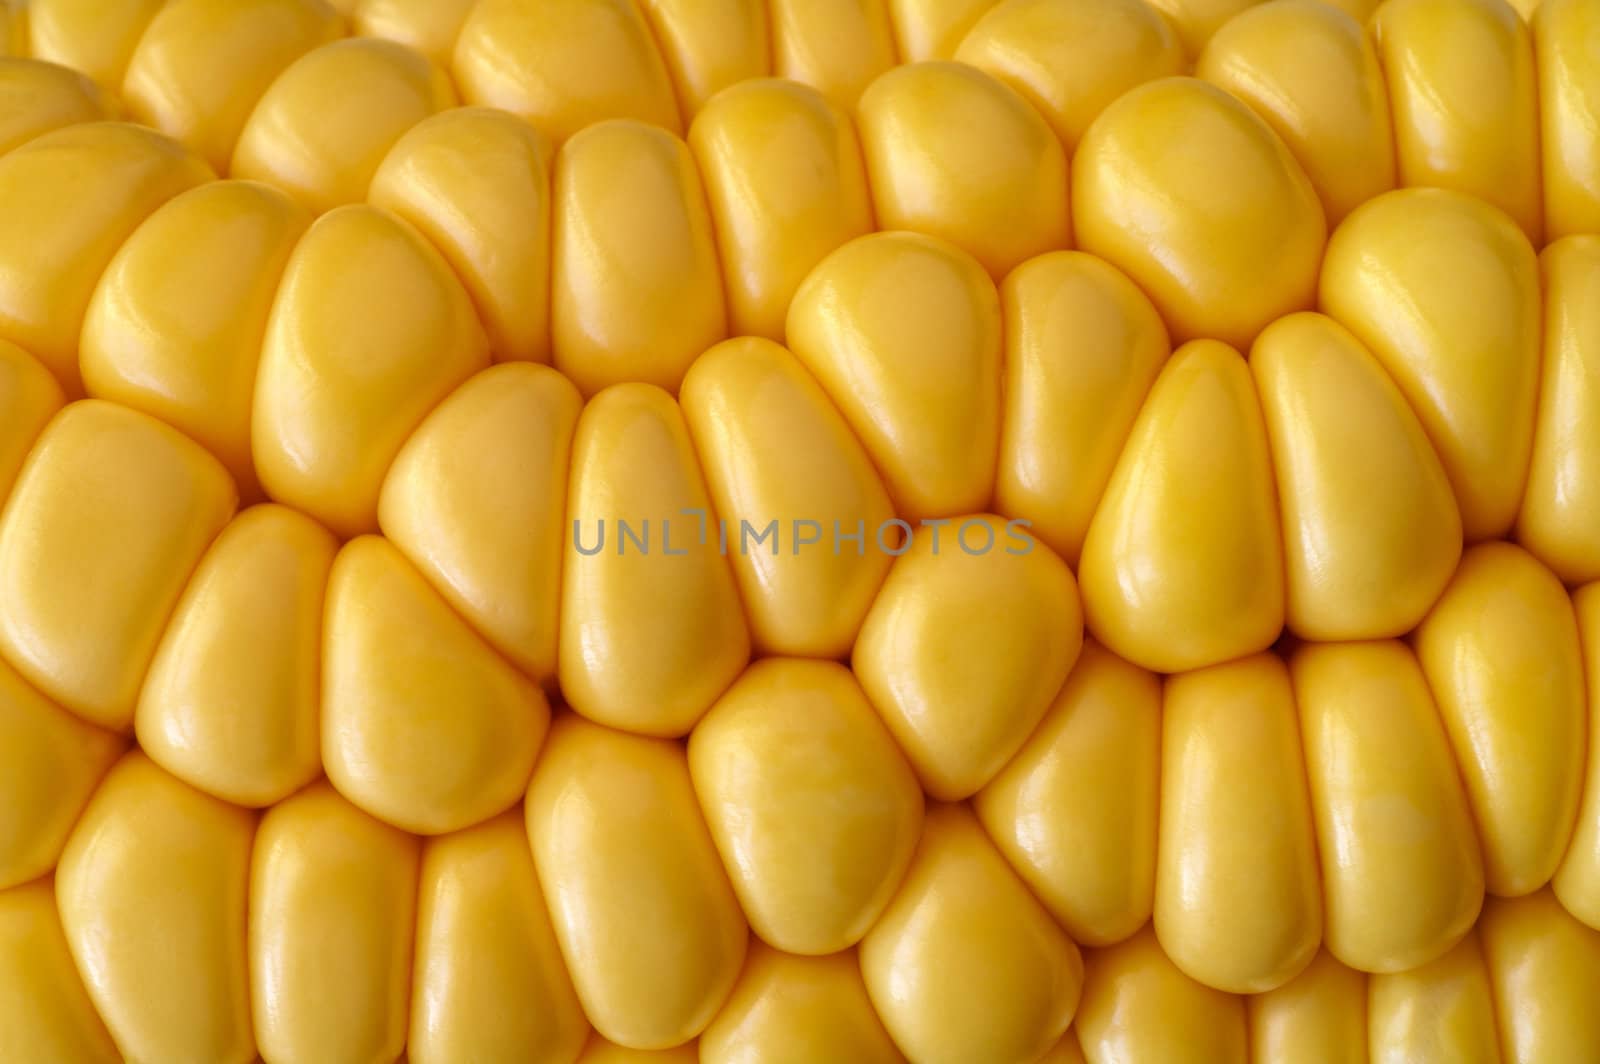 Corn cob closeup